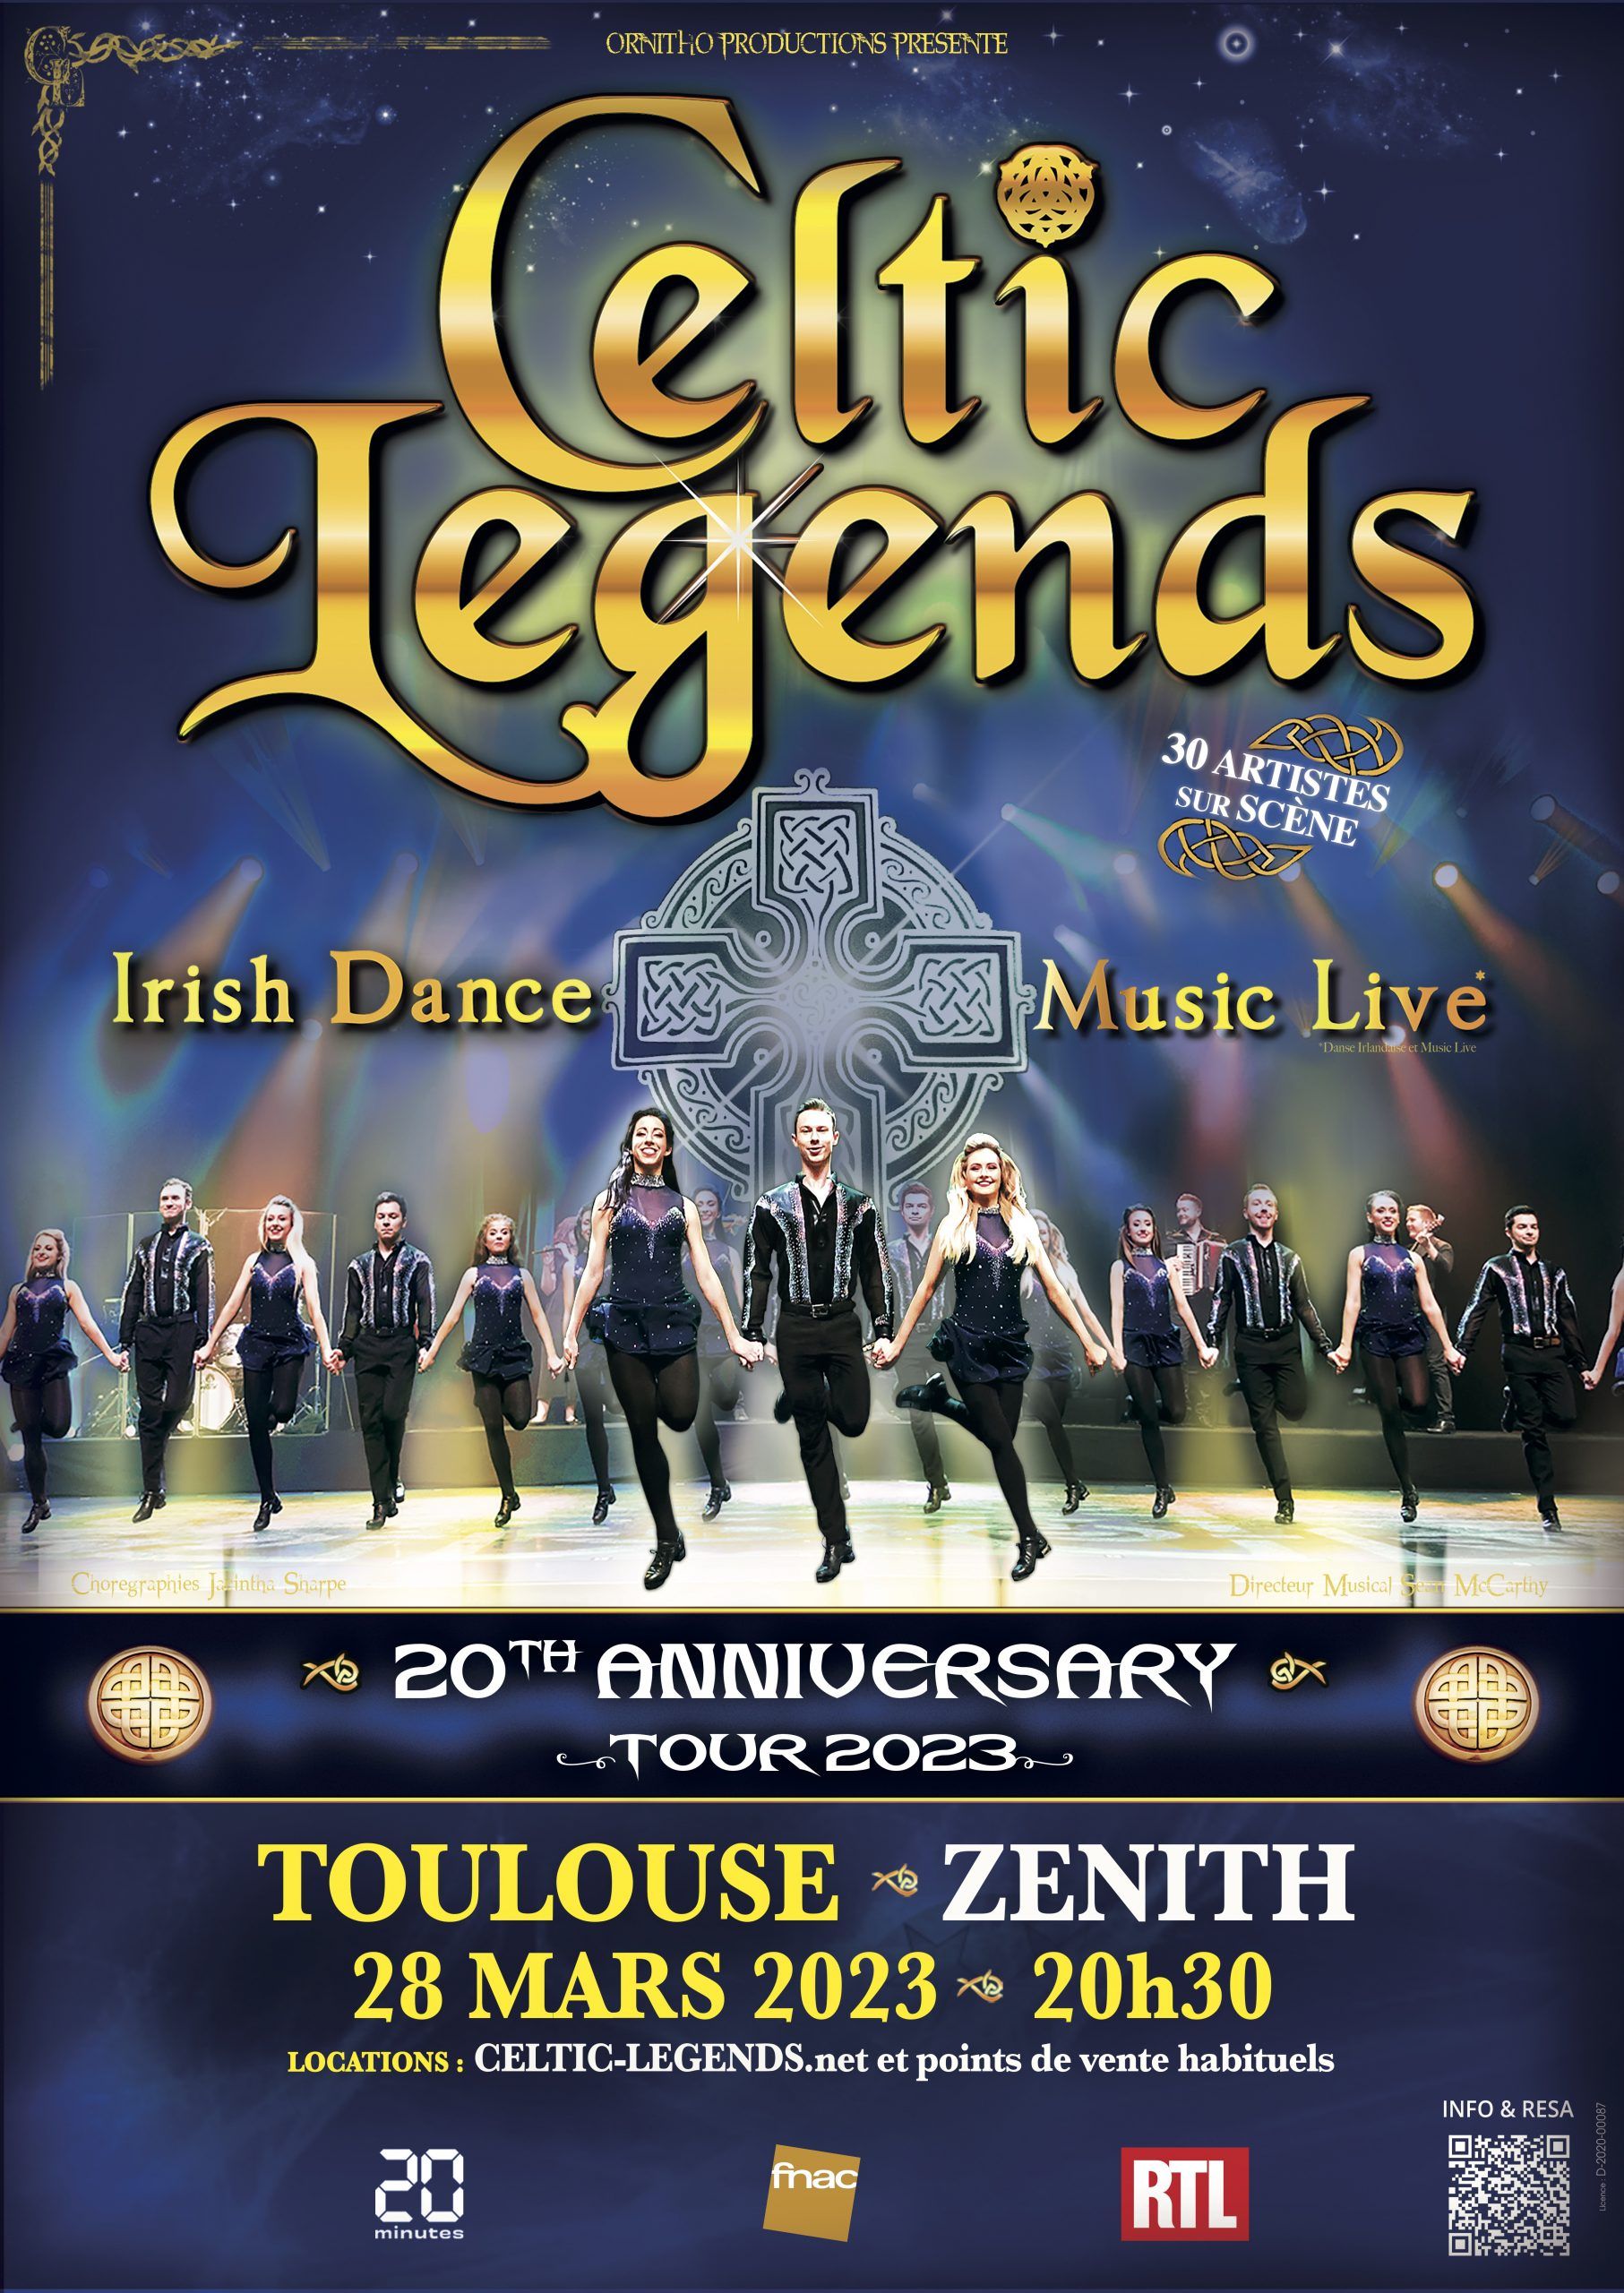 Zenith de Toulouse - Celtic Legends